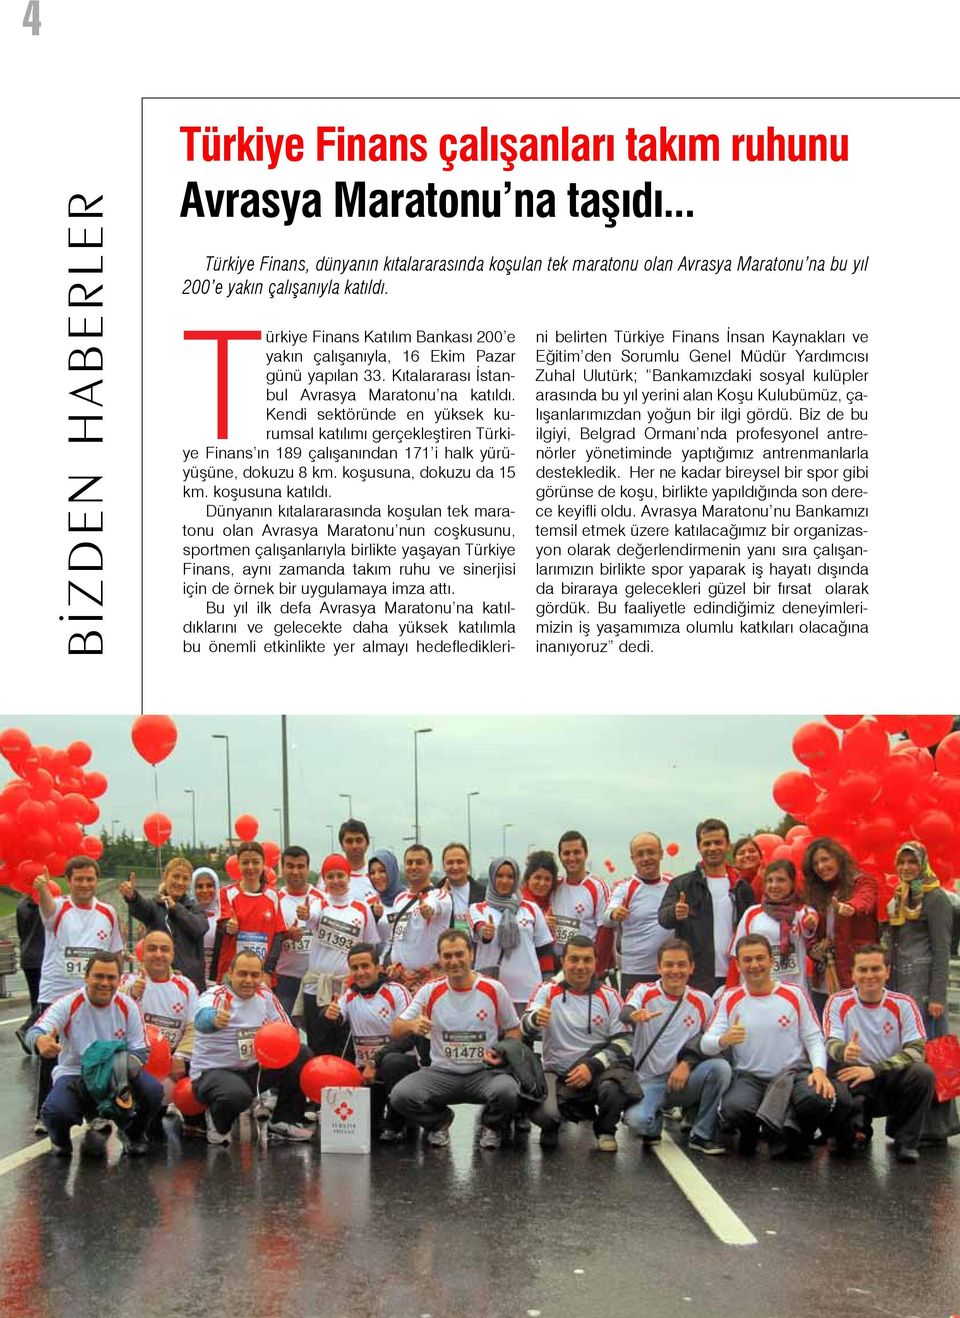 Türkiye Finans Katılım Bankası 200 e yakın çalışanıyla, 16 Ekim Pazar günü yapılan 33. Kıtalararası İstanbul Avrasya Maratonu na katıldı.